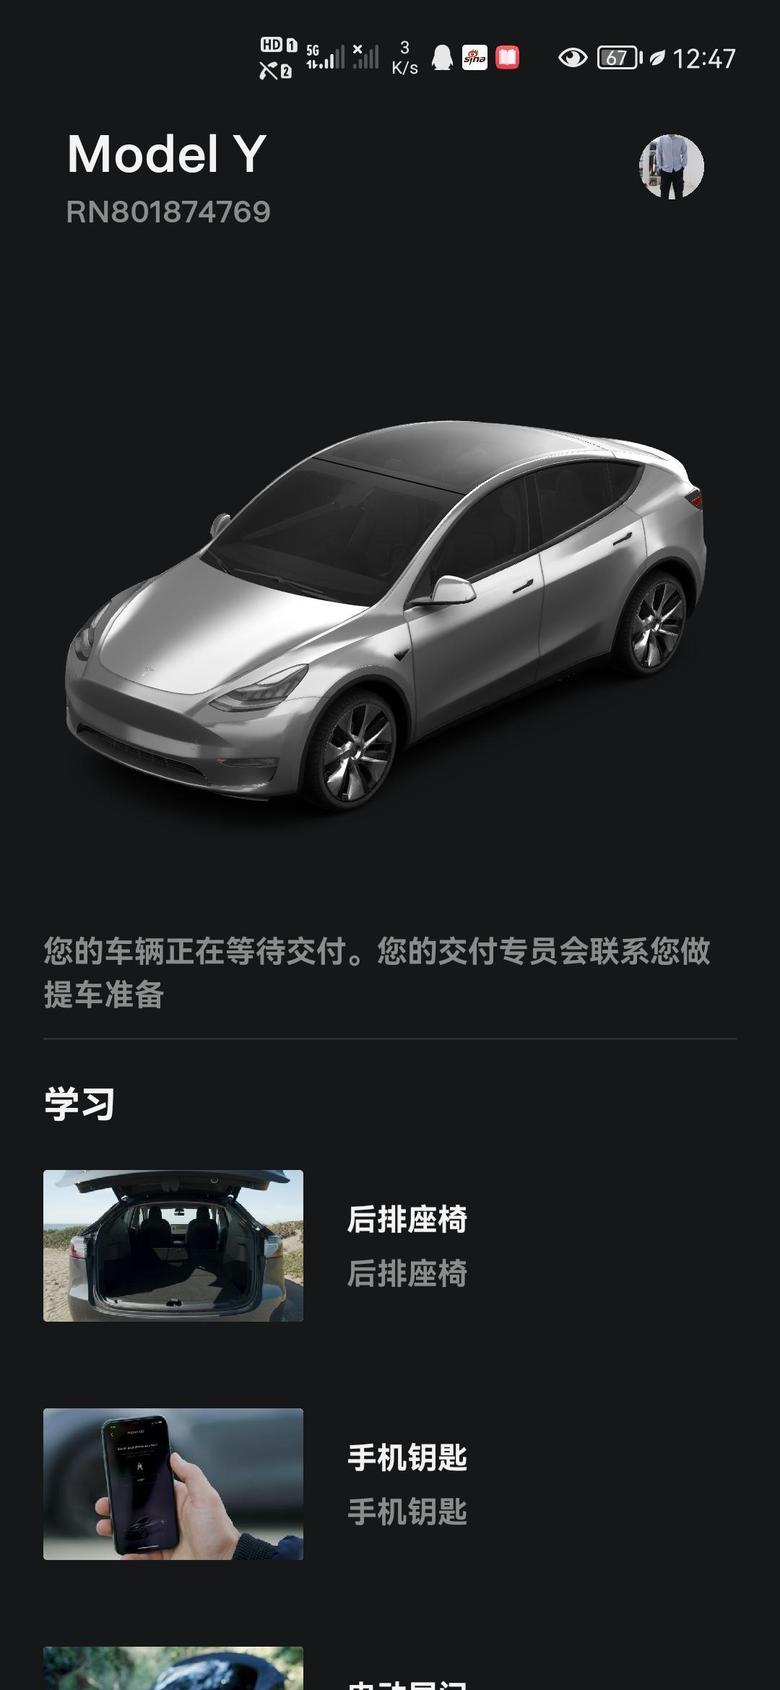 model y 等车日记，8.7广东买的车，去上海提车，销售让我改20寸轮毂，我就不改。